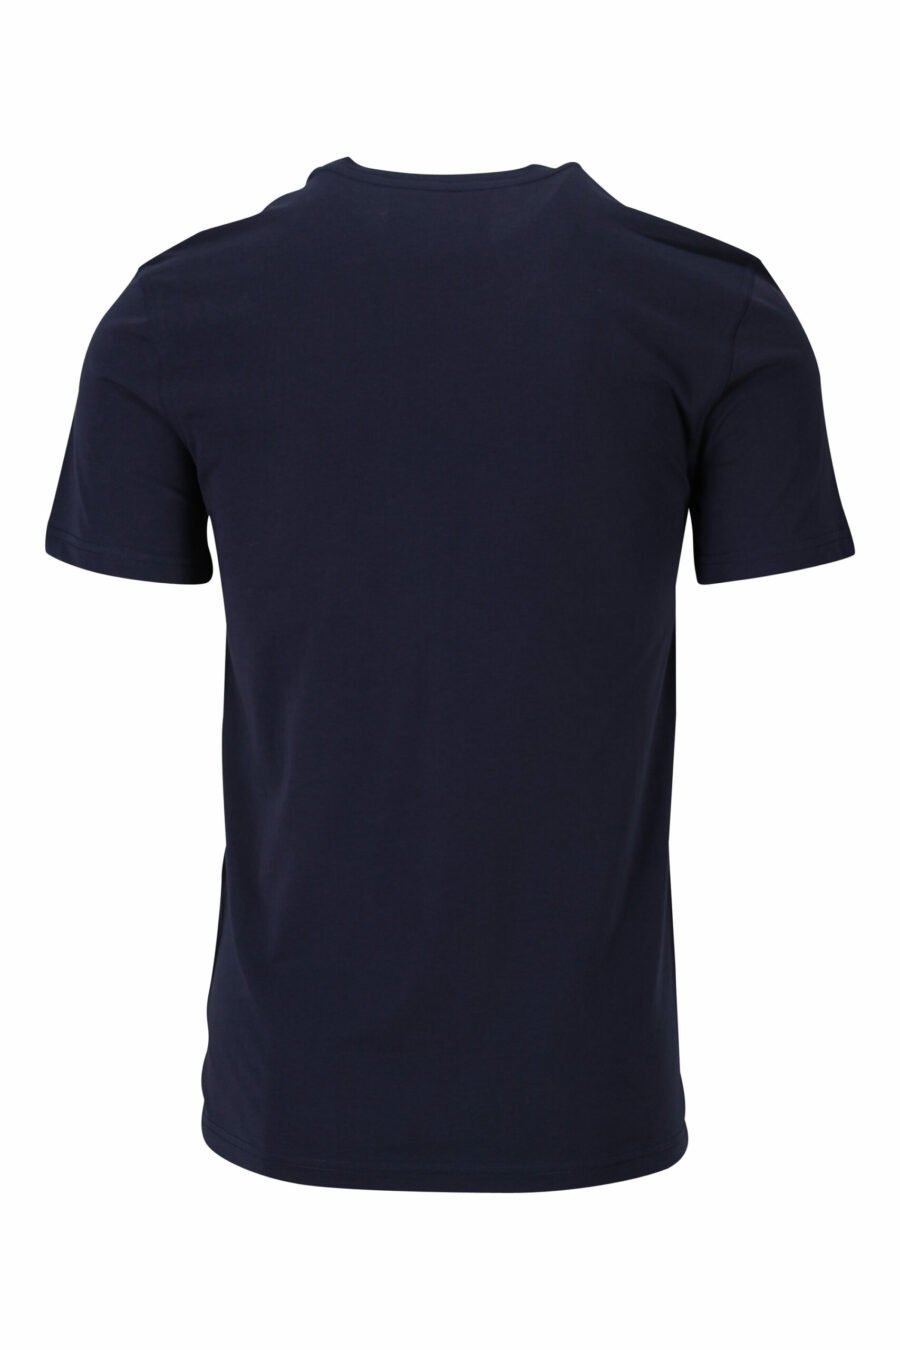 T-shirt bleu foncé avec "teddy" sur mesure maxilogo - 667113124827 1 à l'échelle